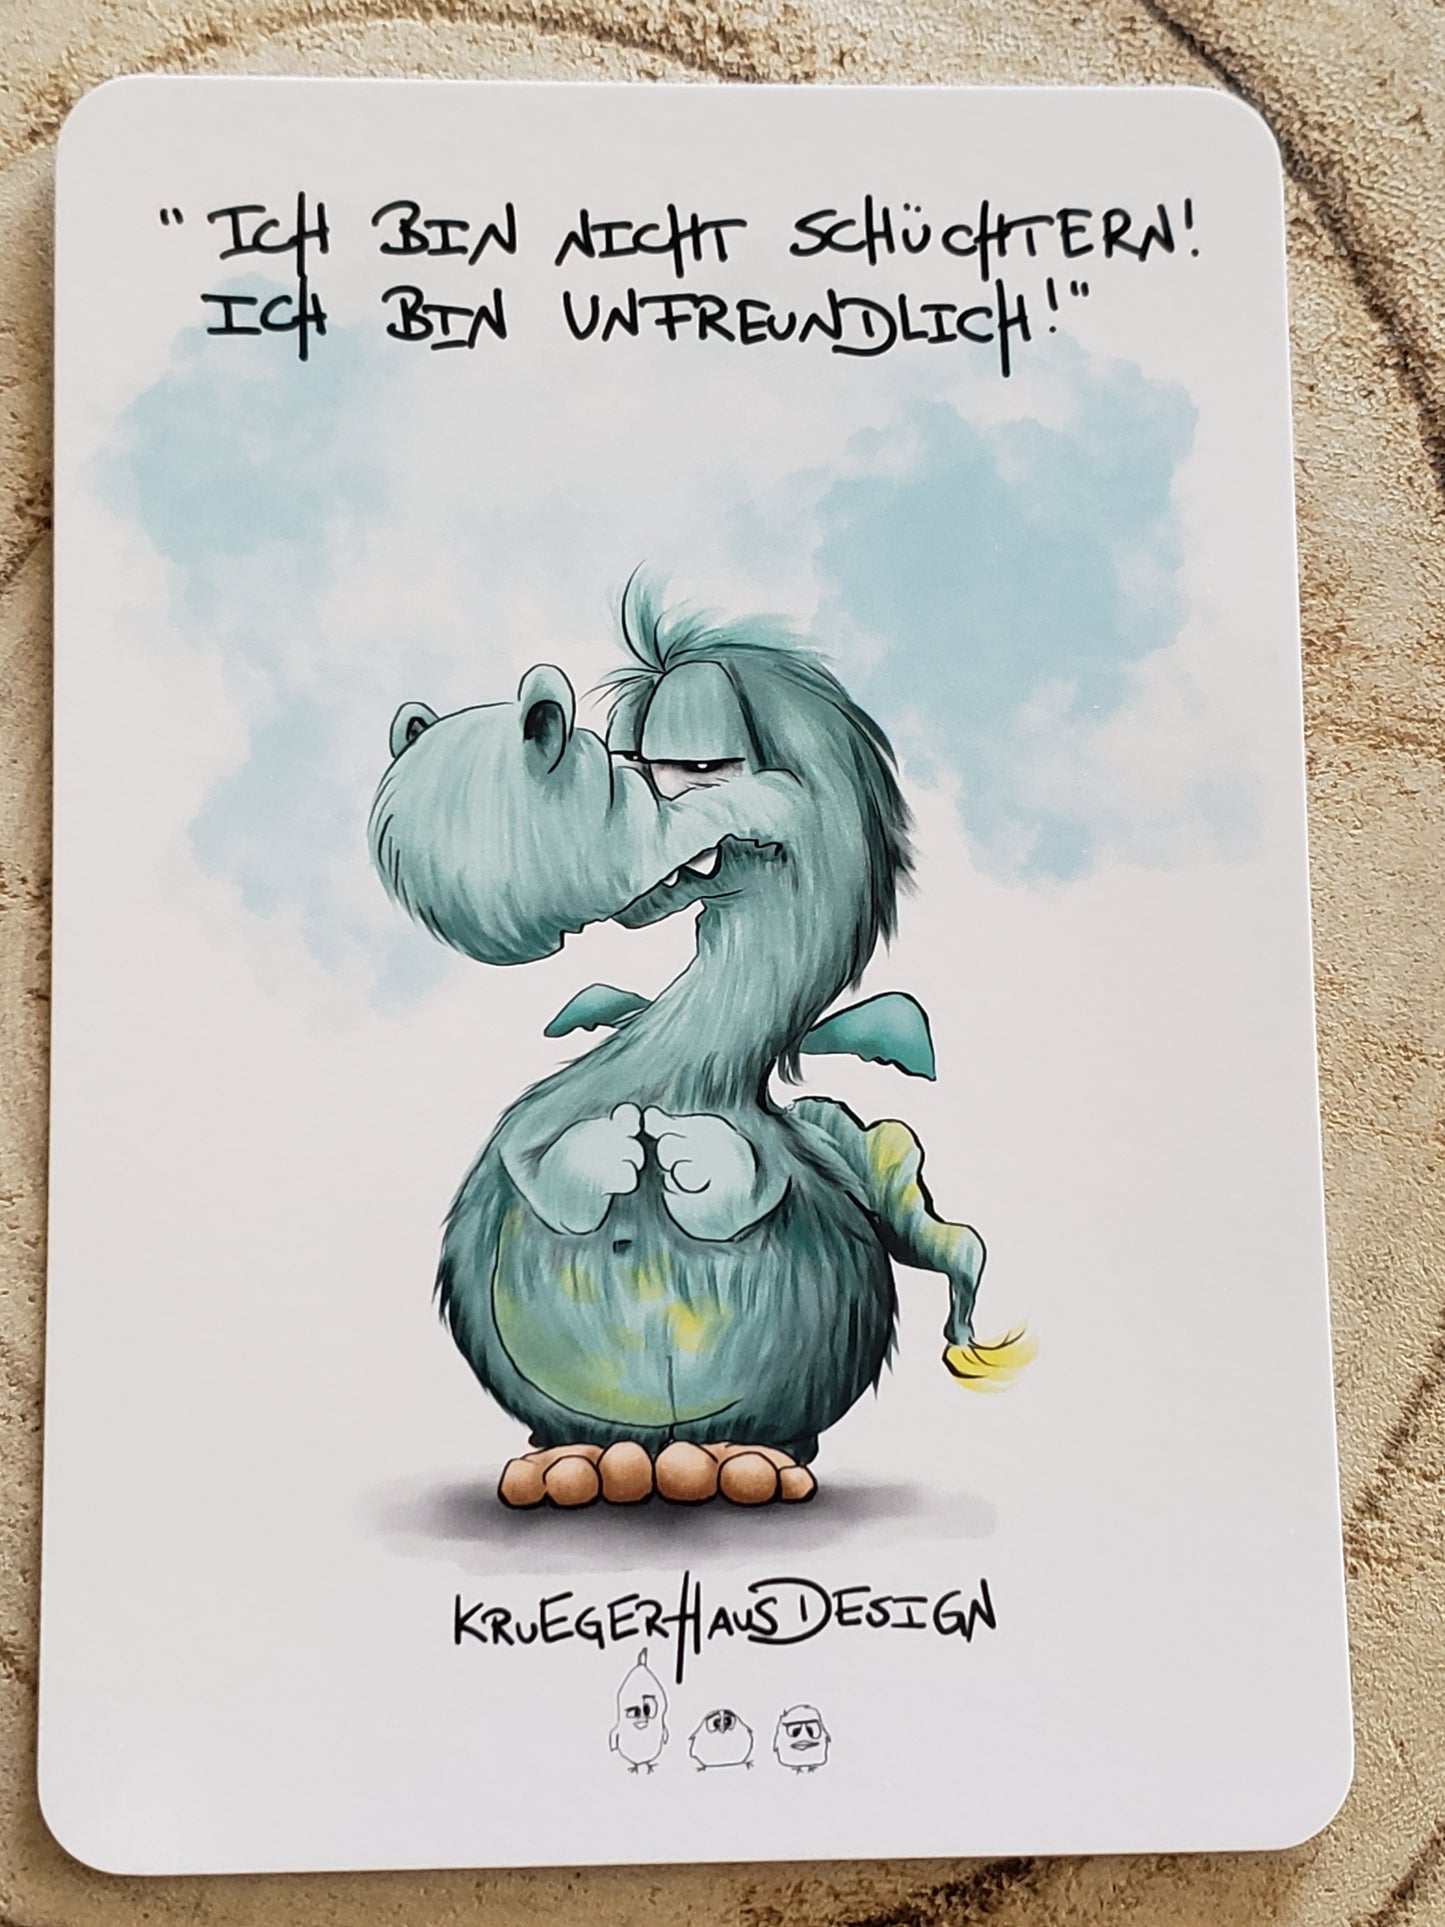 Postkarte Monster Kruegerhausdesign mit Spruch "Ich bin nicht schüchtern!..."